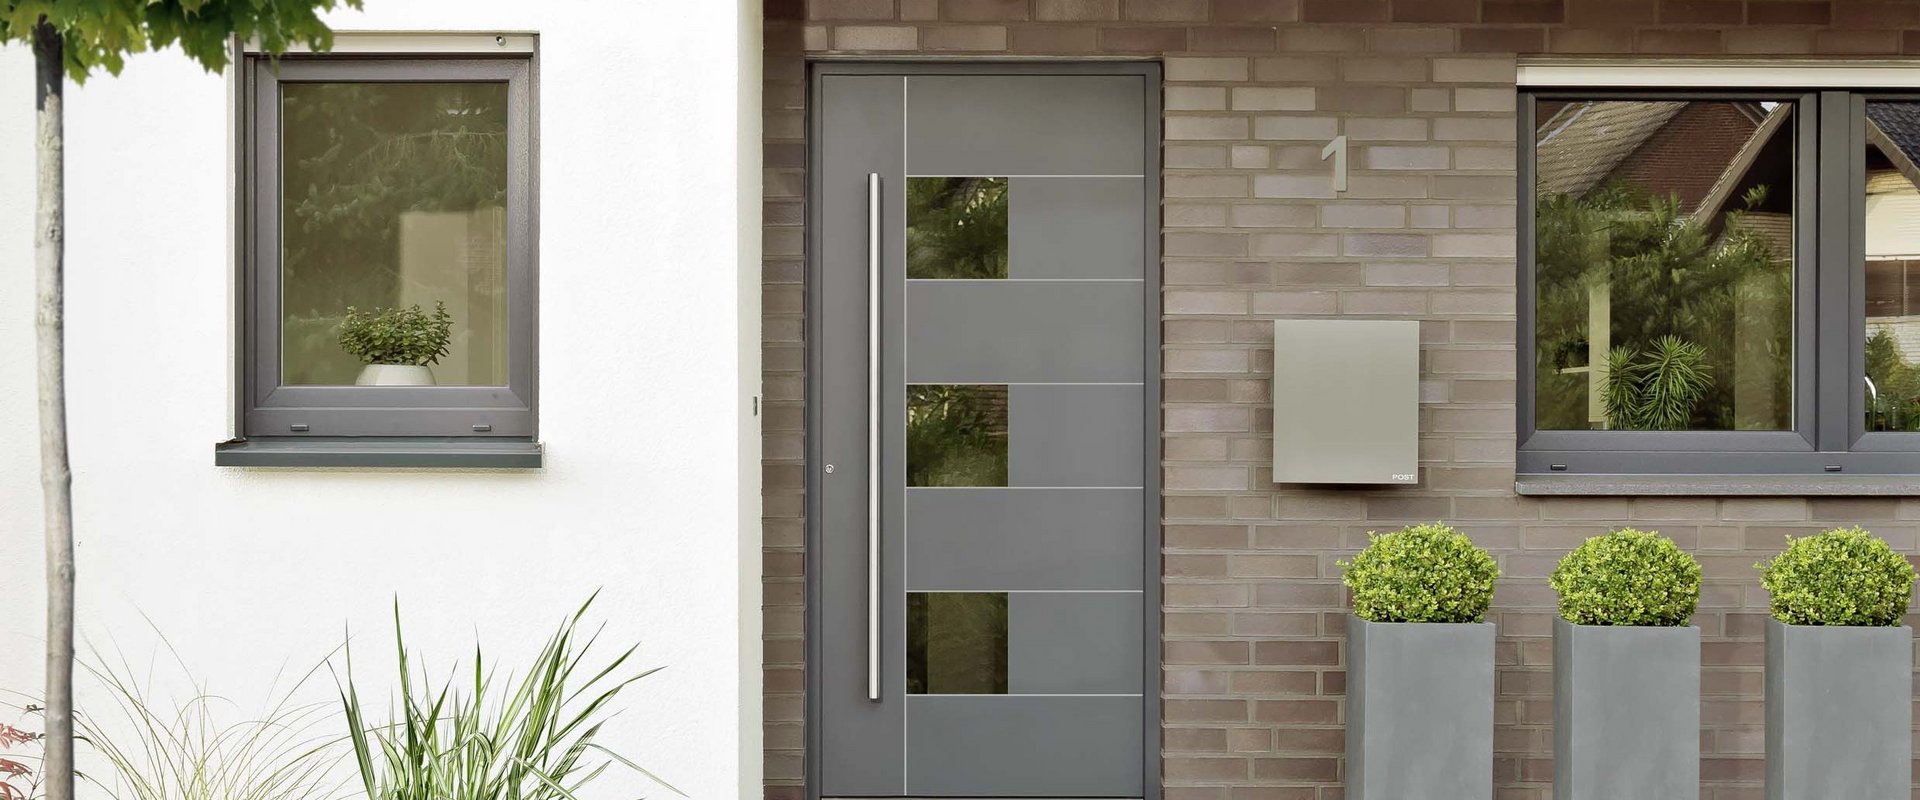 Solutions for front door panels